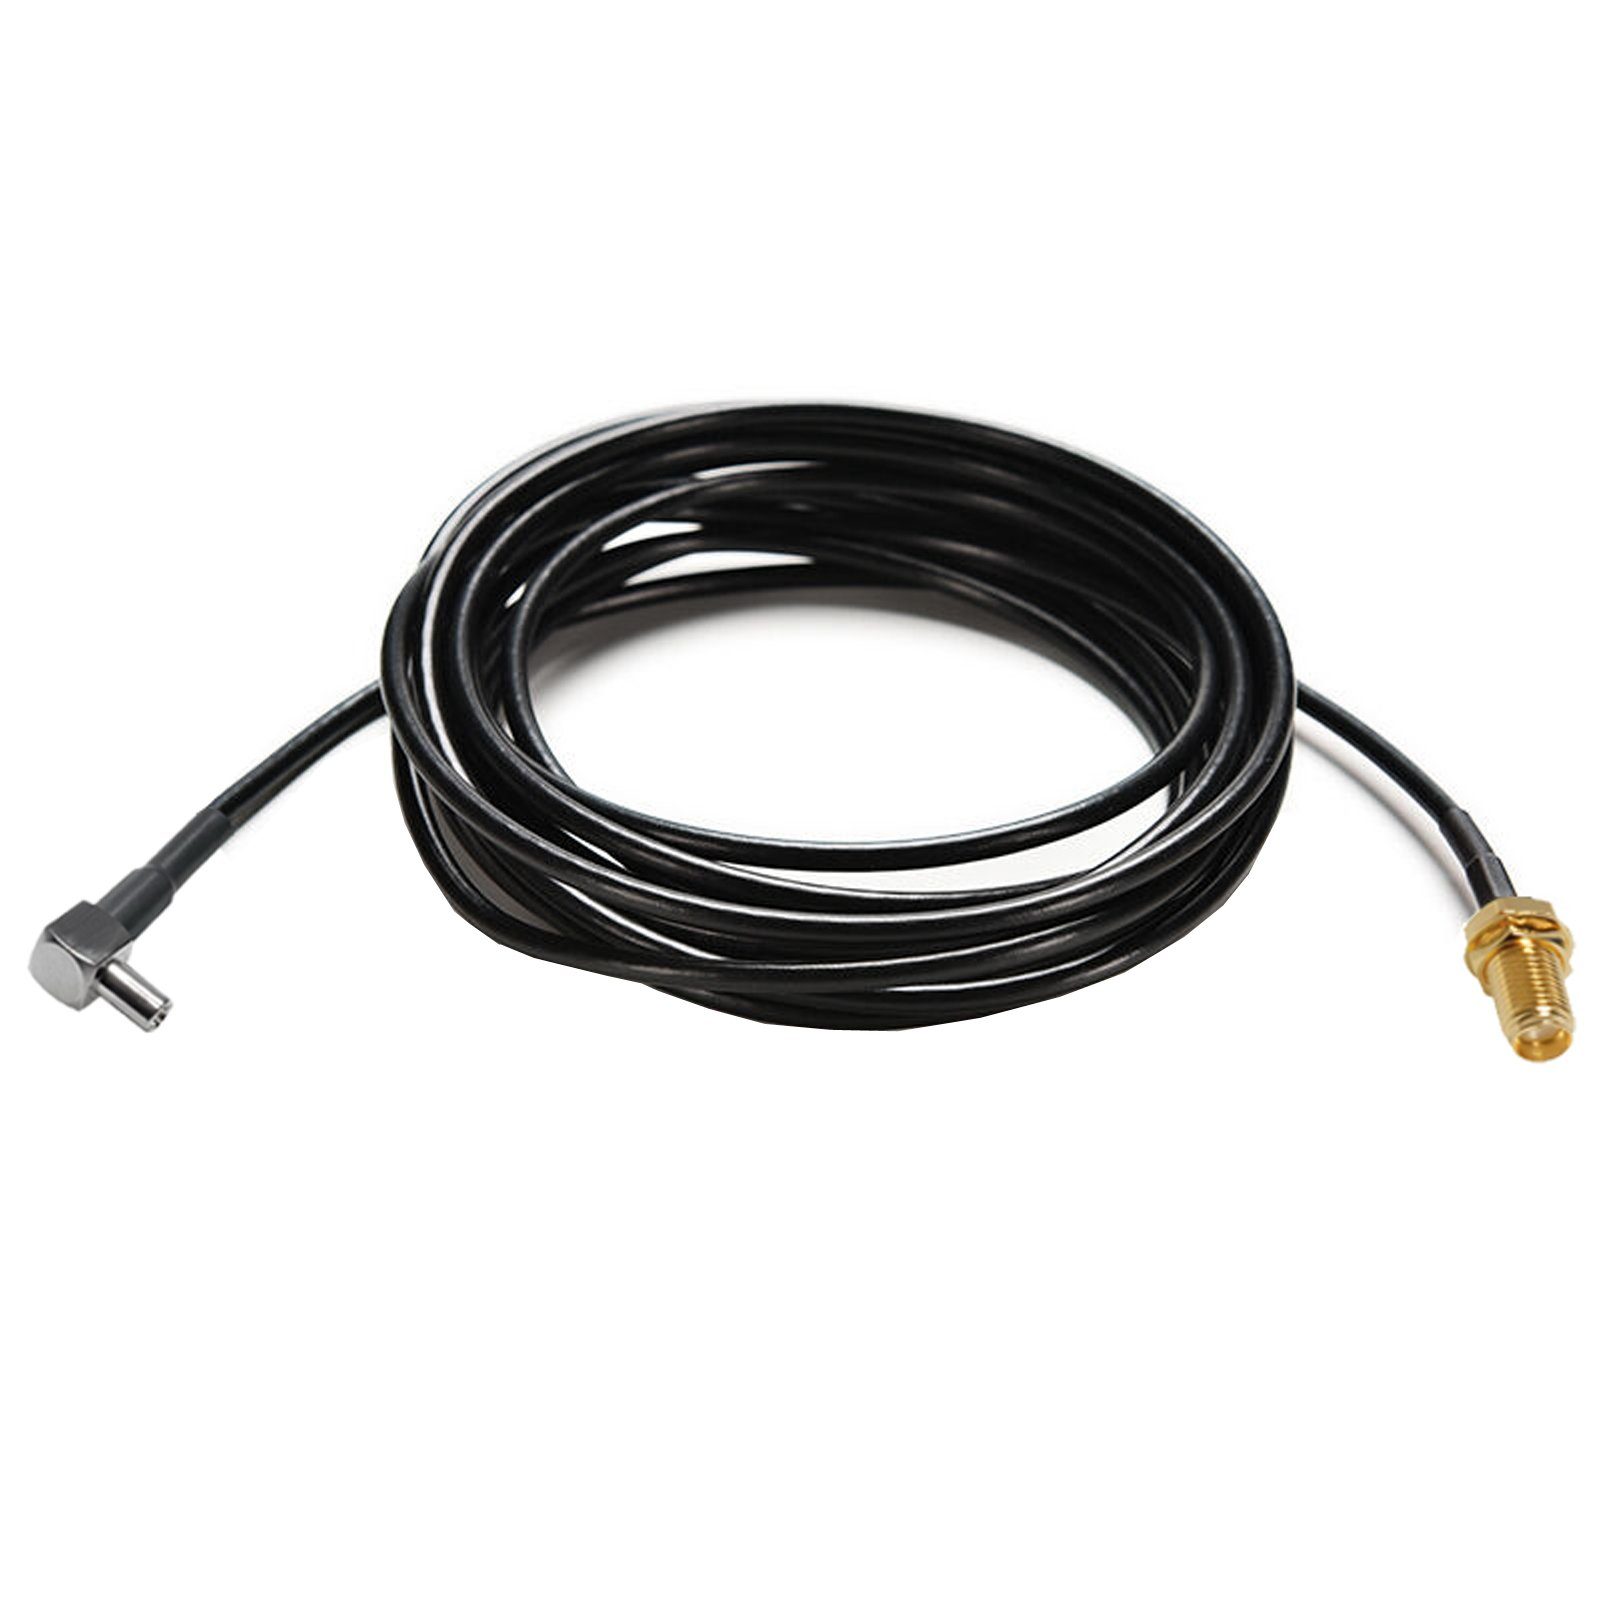 Bolwins E35 TS9 auf SMA Kabel für Stecker Adapter (300 cm) Verlängerungskabel, Buchse Antenne 3m Pigtail